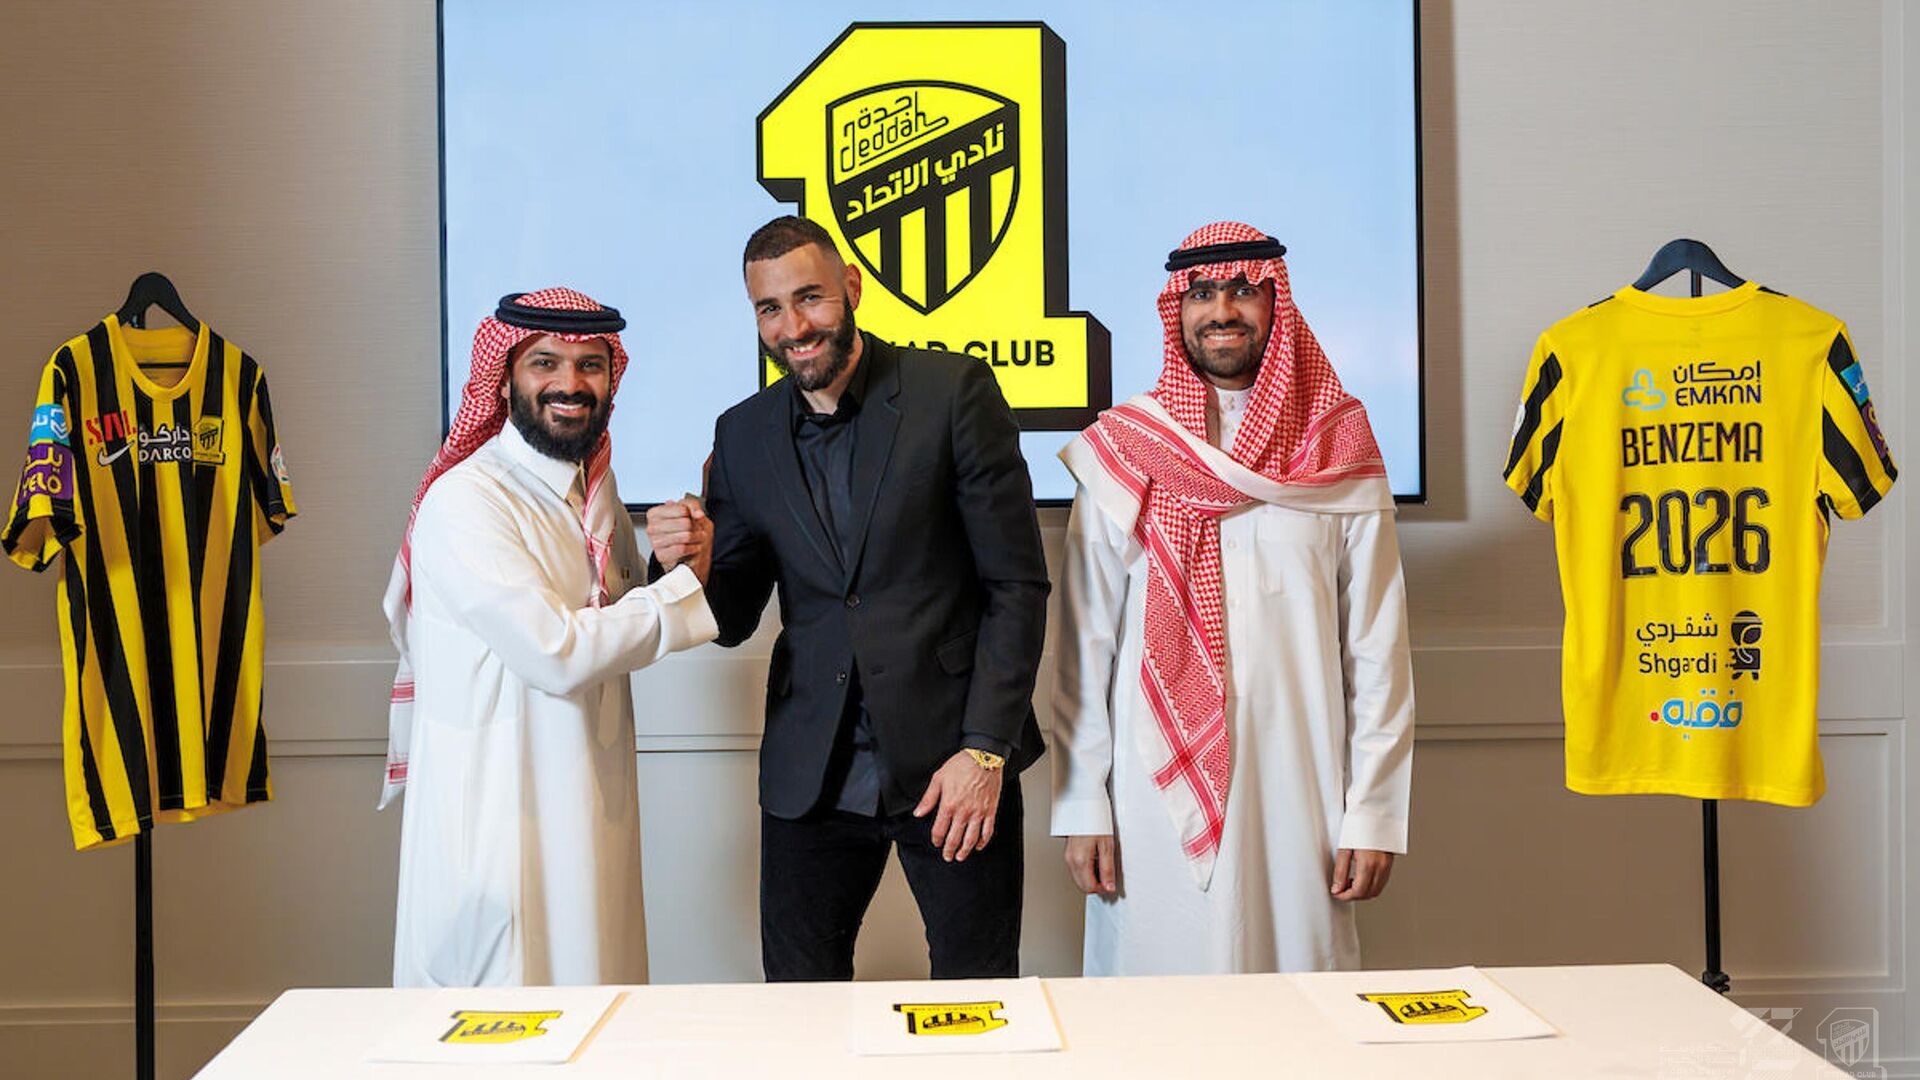 Бензема – о карьере в Саудовской Аравии: жду возможности вывести на новый уровень футбол в стране